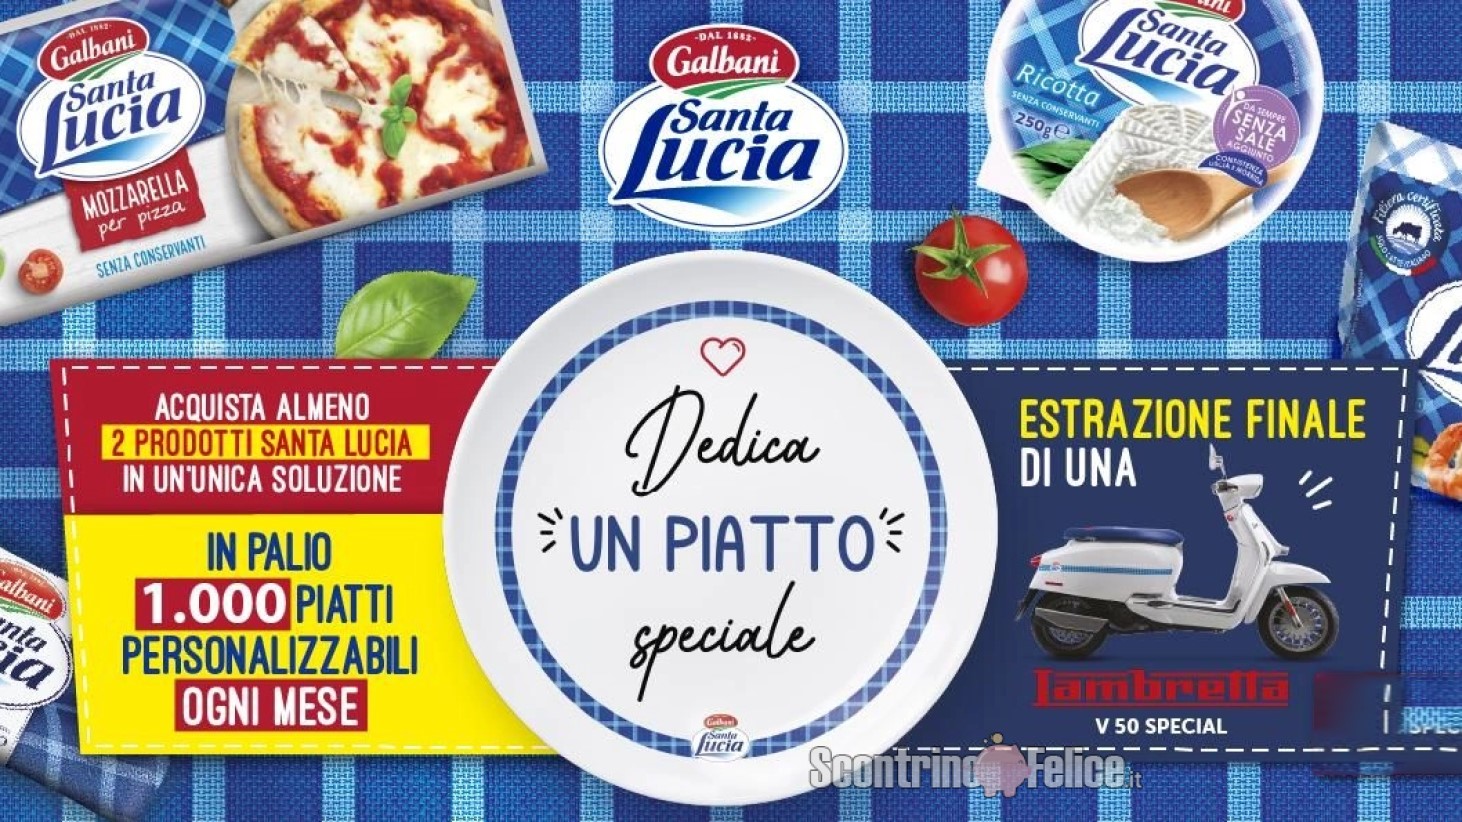 Concorso Galbani Santa Lucia "Dedica Un Piatto Speciale": vinci piatti personalizzabili e 1 Lambretta V50 Special